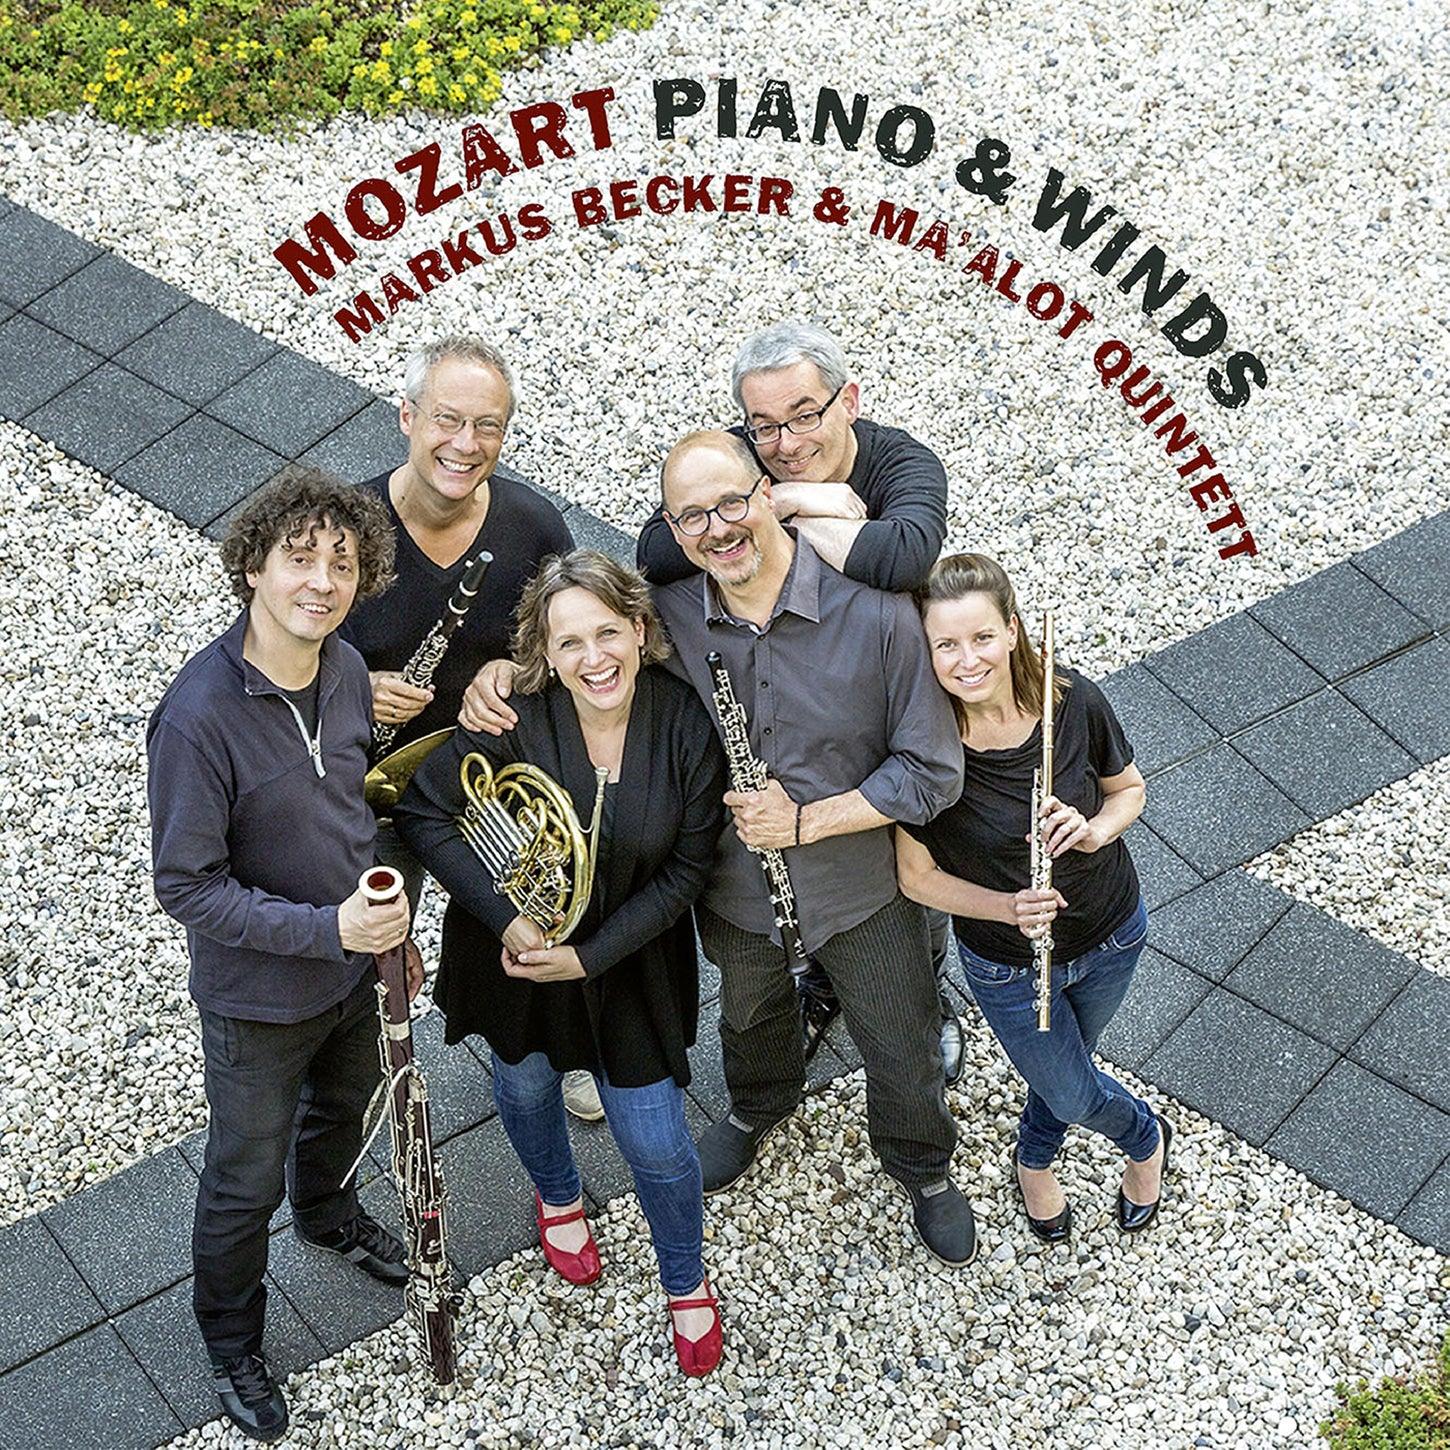 Mozart: Piano & Winds / Becker, Ma'alot Quintet - ArkivMusic